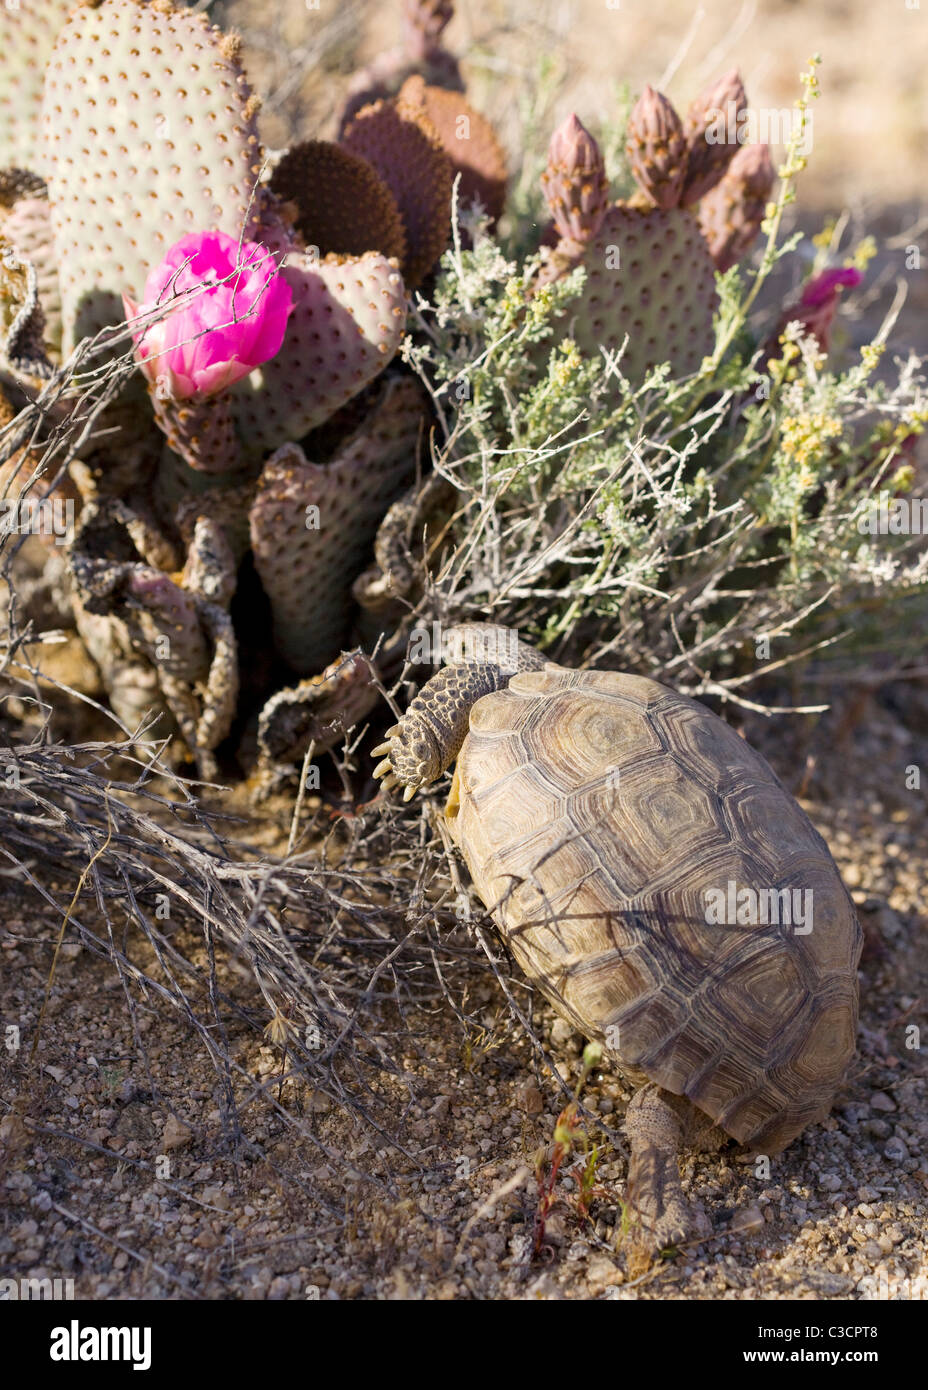 La tortue du désert de Mojave (Gopherus agassizii) escalade un cactus de  castor pour manger sa fleur - Mojave, Californie USA Photo Stock - Alamy